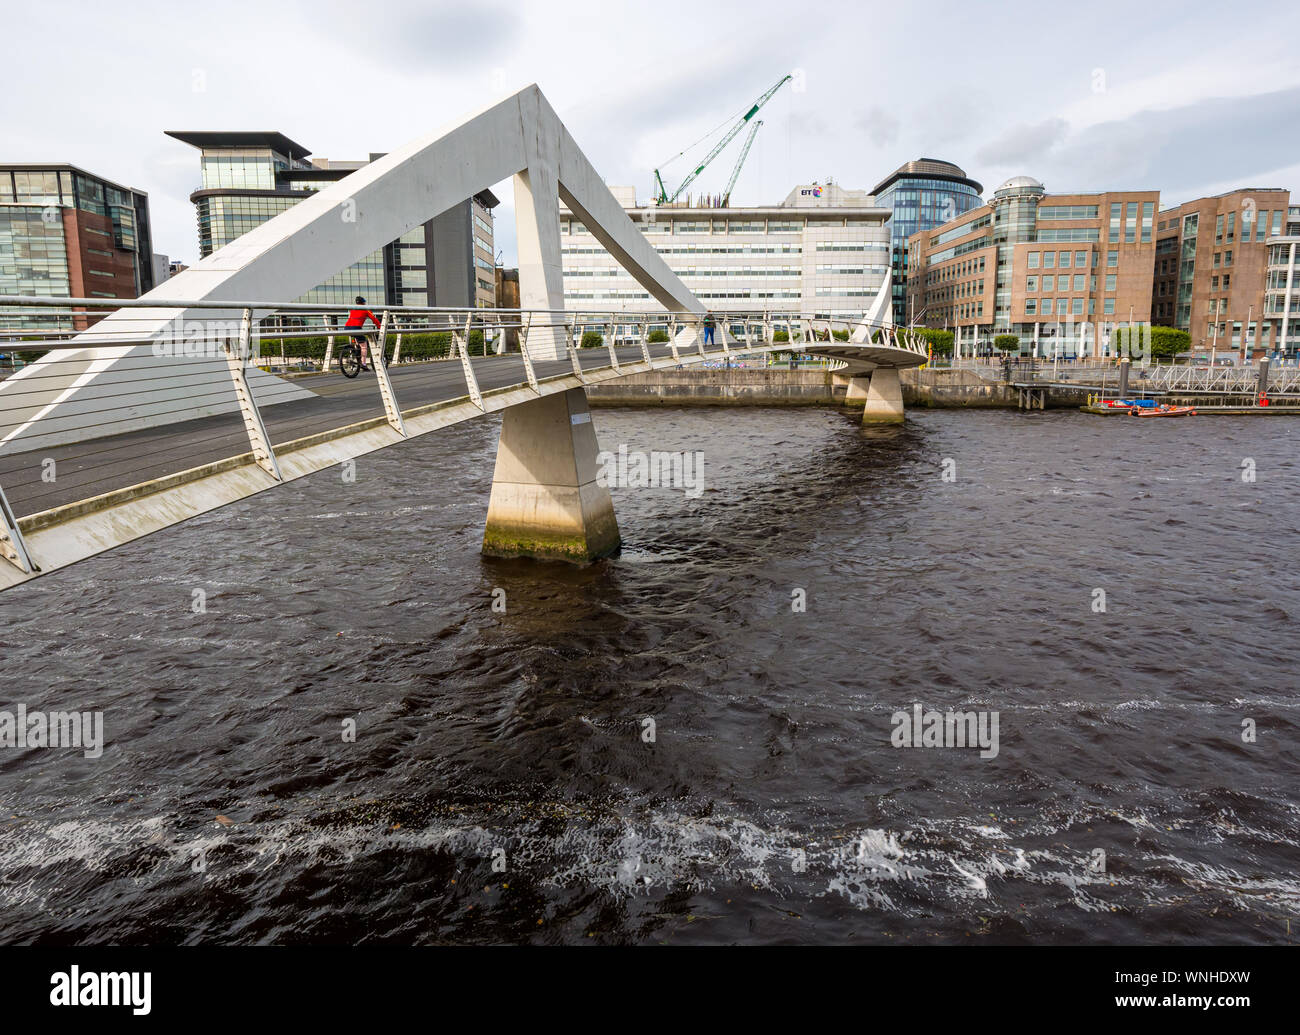 Tradeston Fußgängerbrücke, die wellenlinie Bridge bekannt, Fluss Clyde, Glasgow, Schottland, Großbritannien Stockfoto